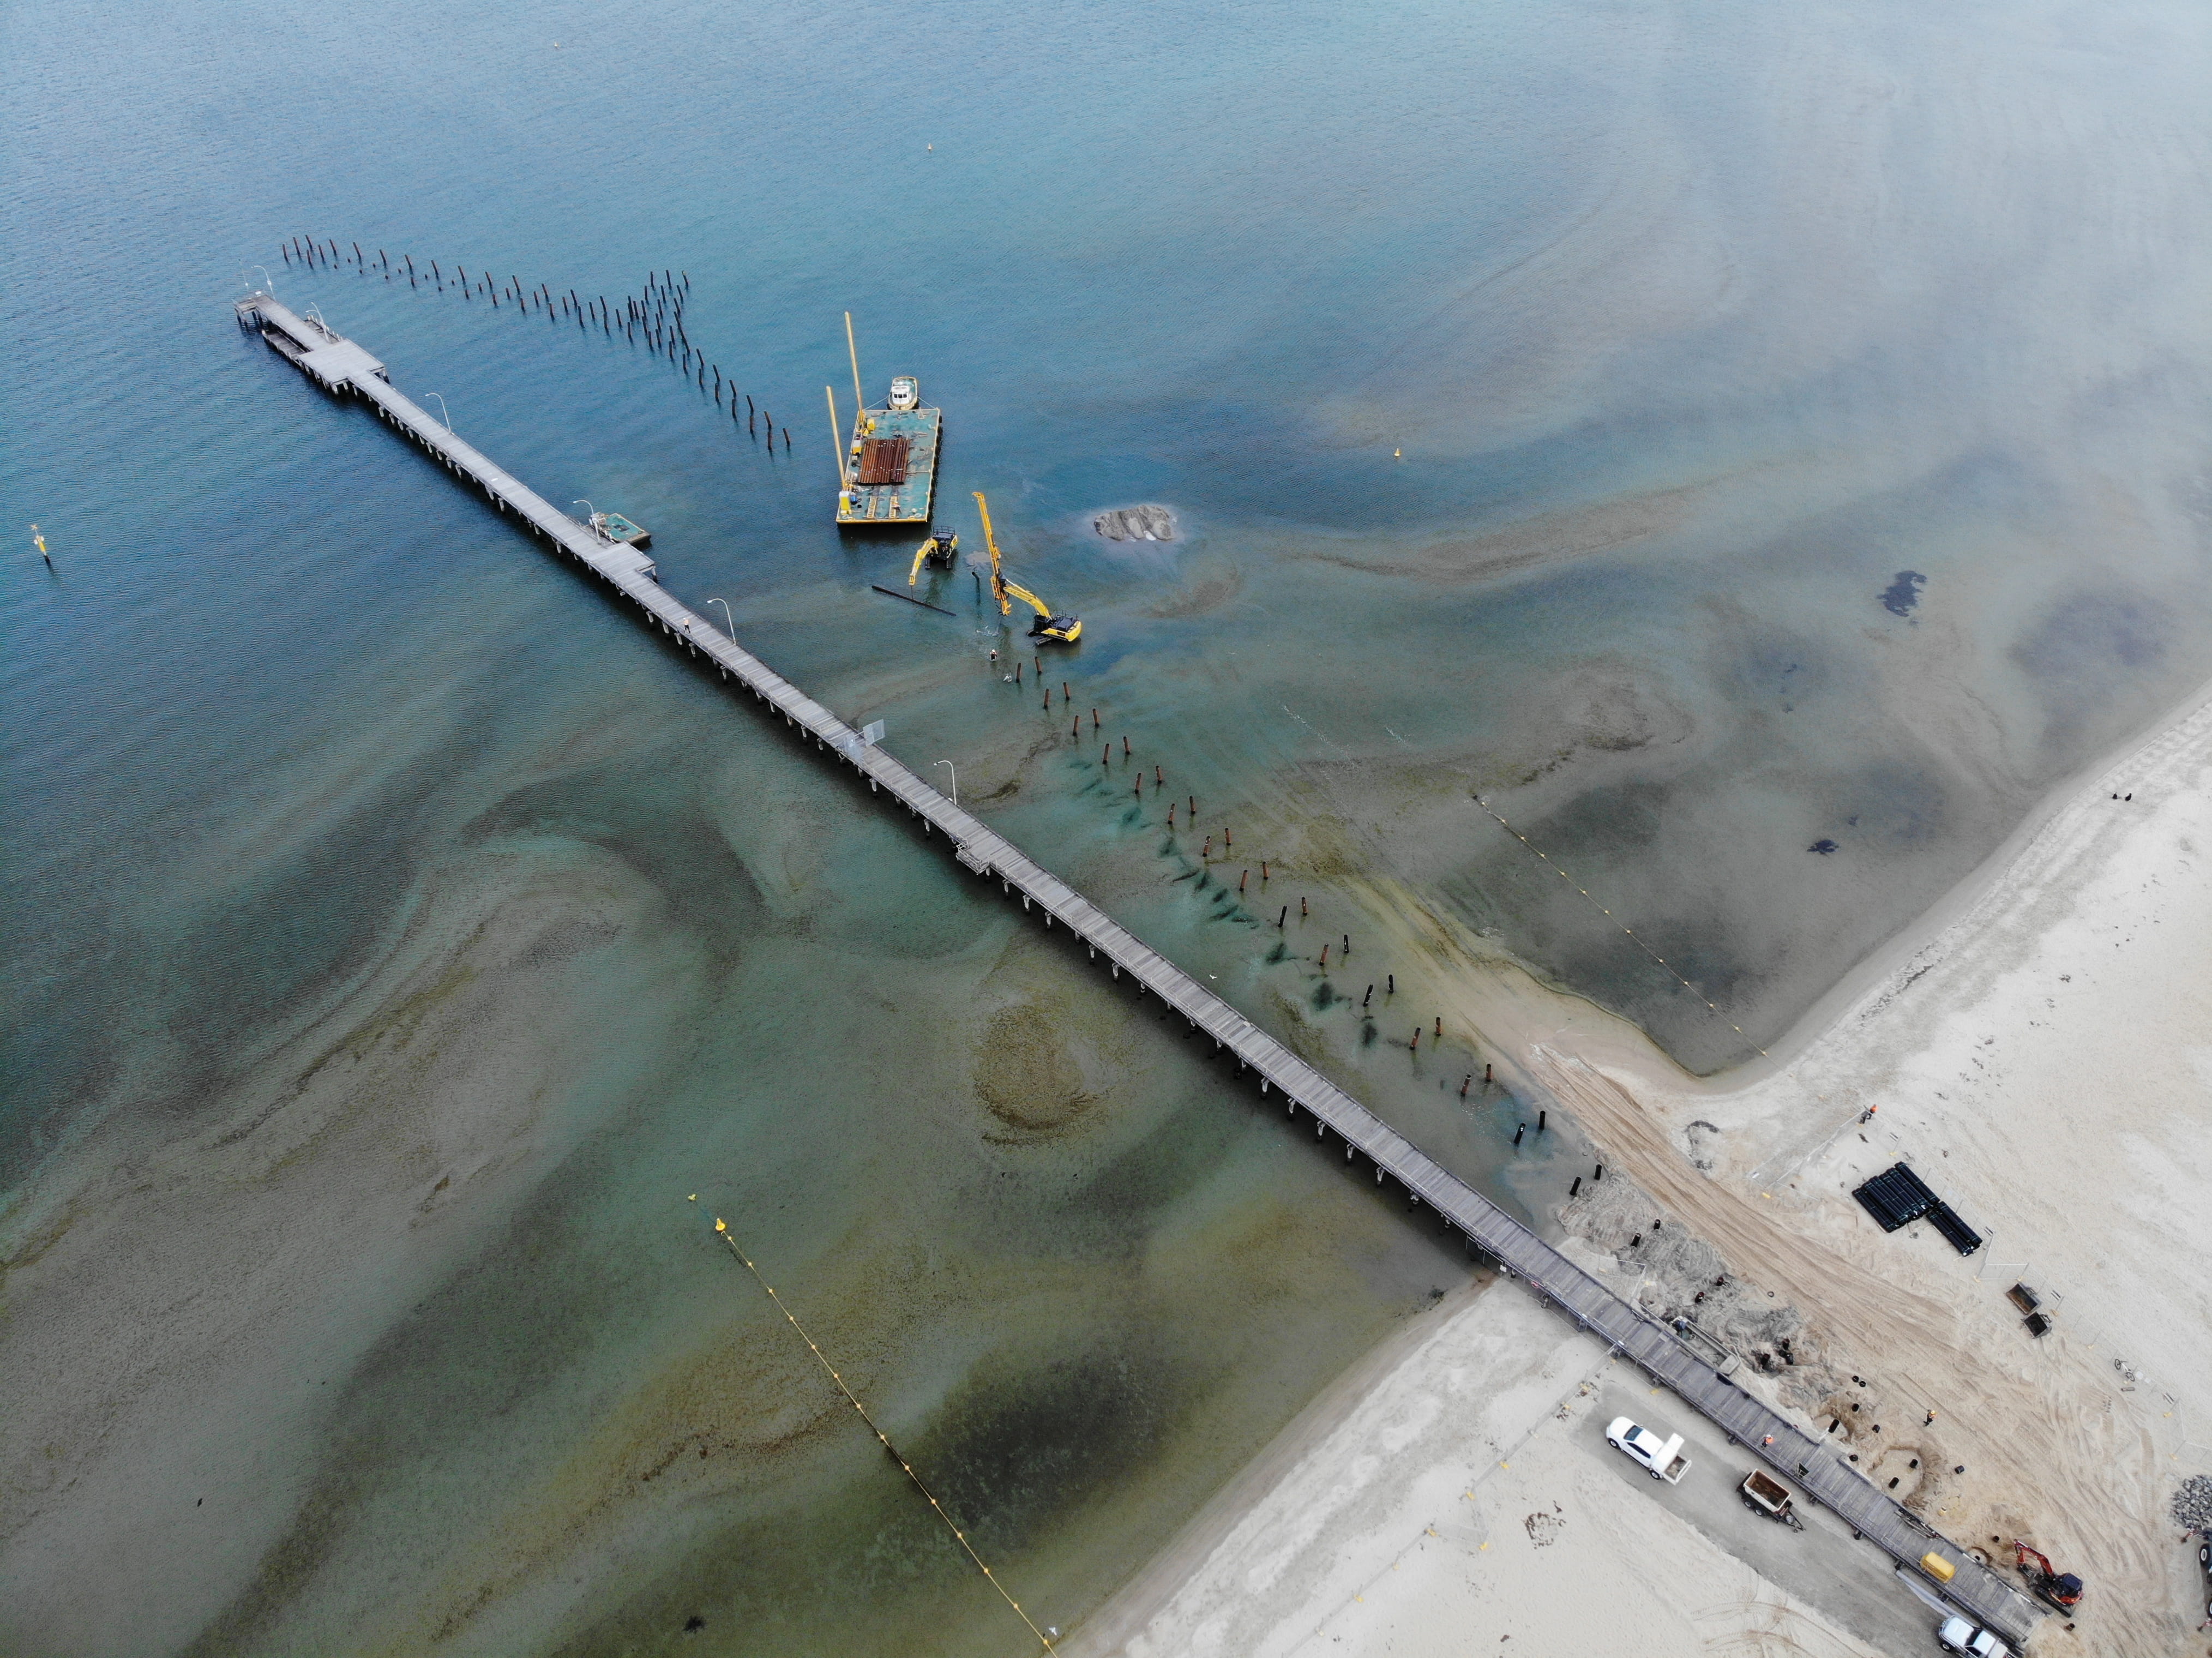 Aerial image of Altona Pier